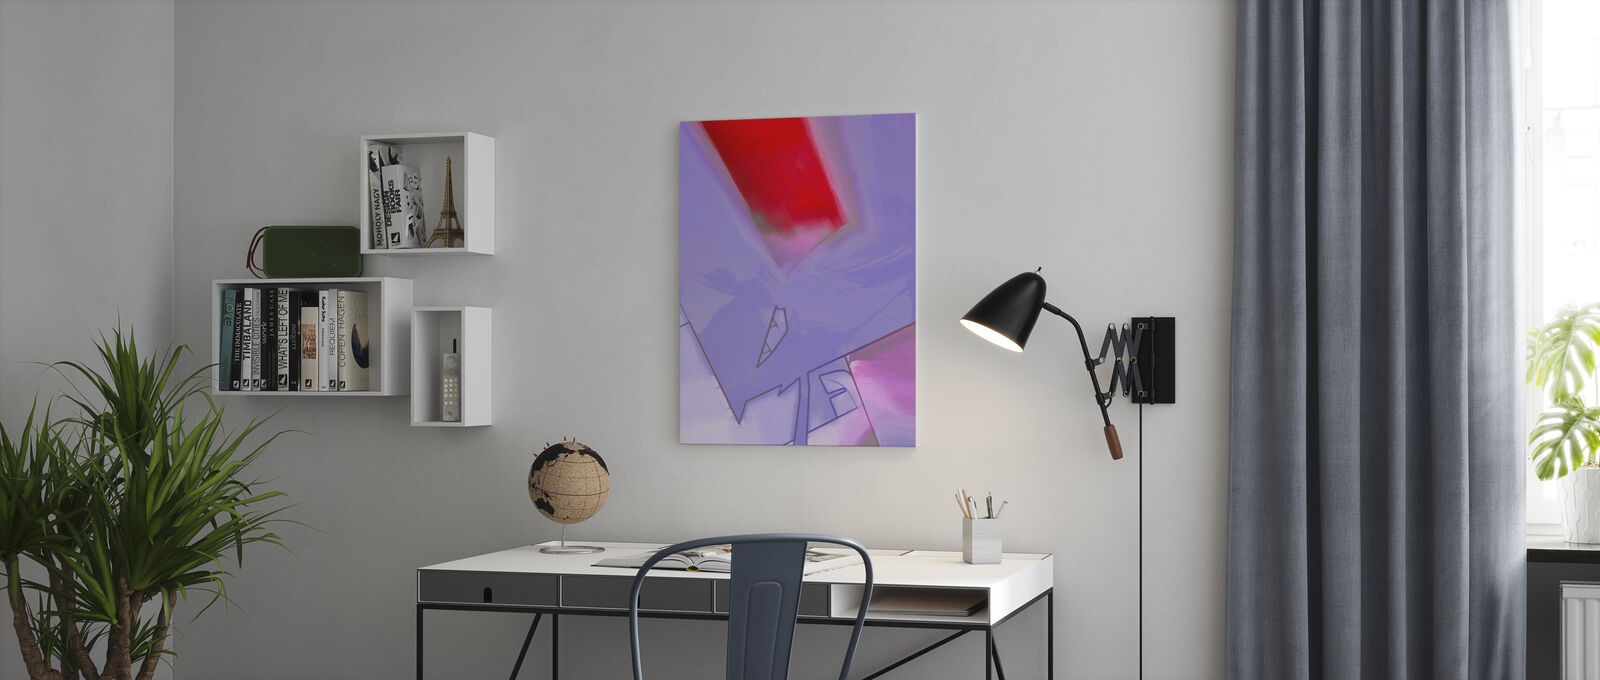 アートパネル 10cm単位でサイズオーダーできる 絵画 壁掛け インテリア 壁飾り キャンバス アート ウォール 抽象画 赤 レッド 紫 パープル Brandingidentitydesign Com